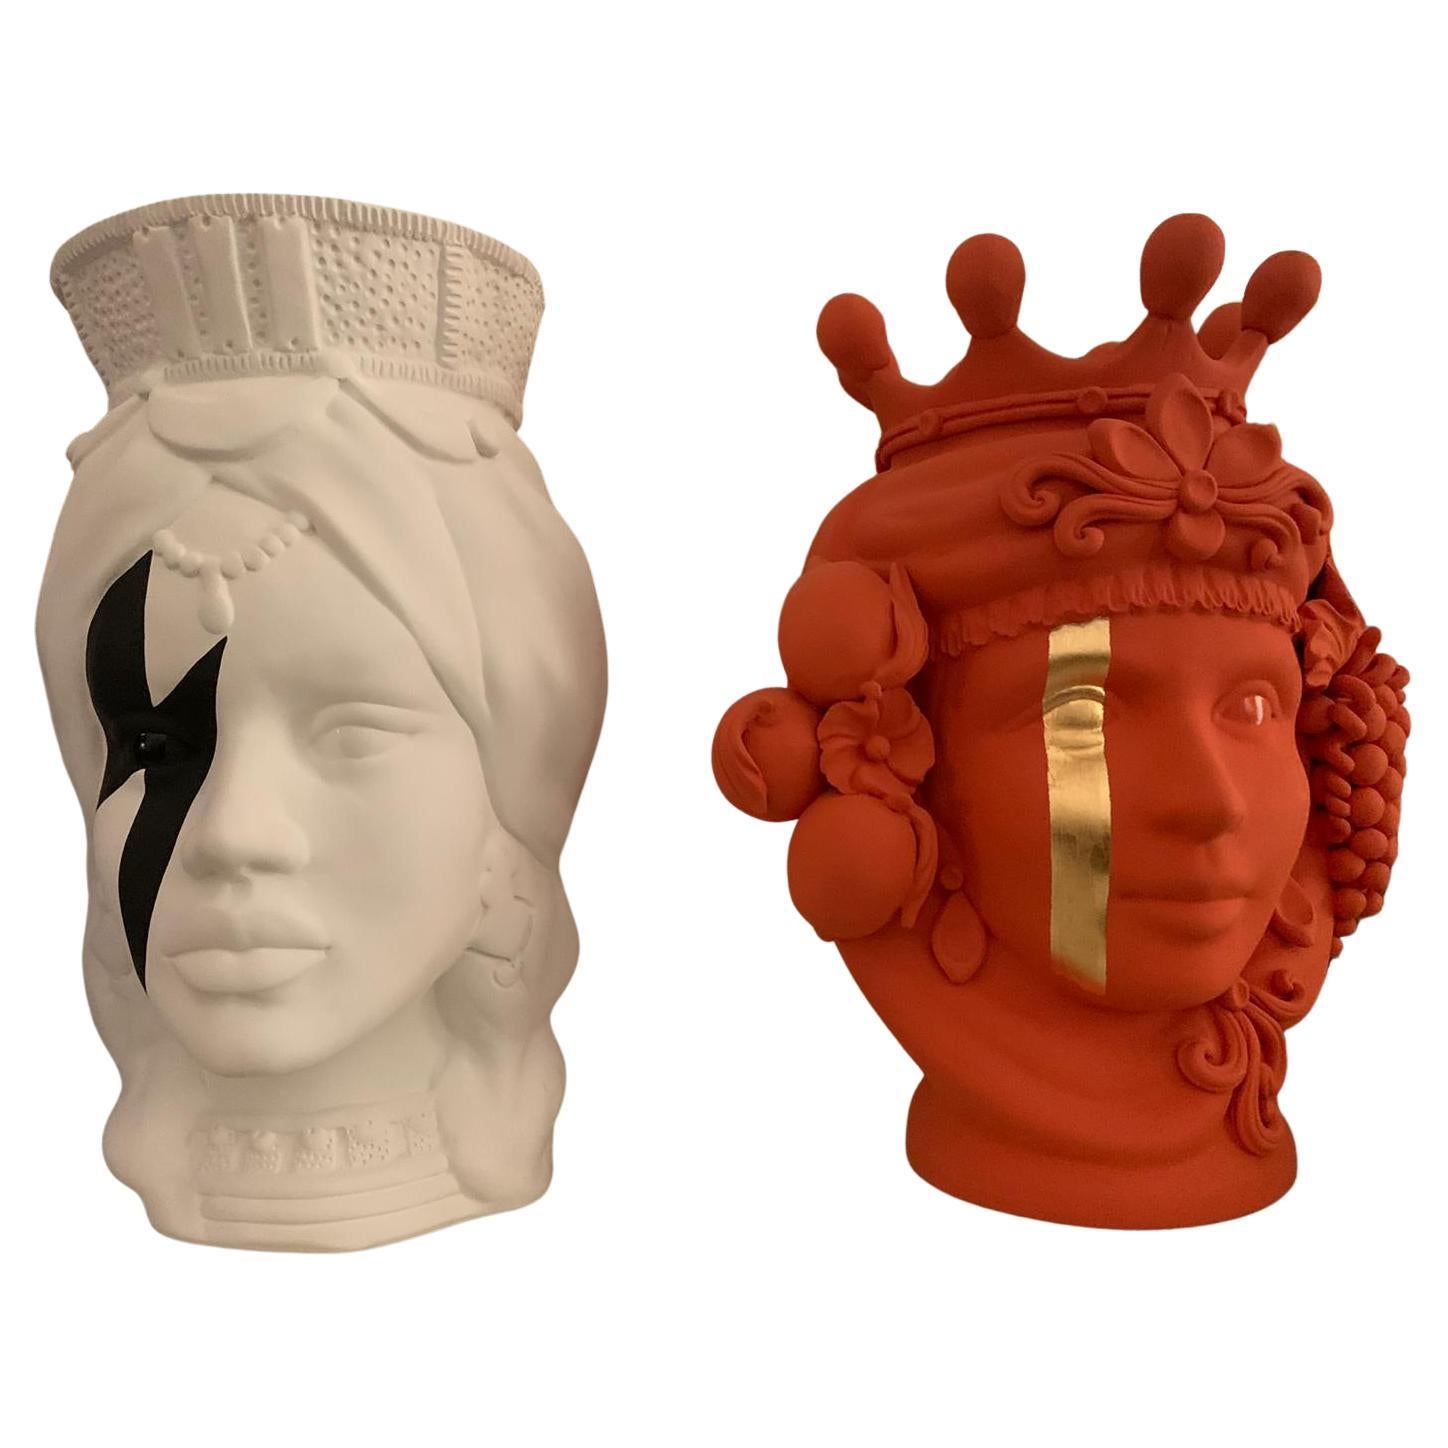 Collection of 2 Moor Heads "Pop Women", Handmade in Italy, 2019, Unique Design